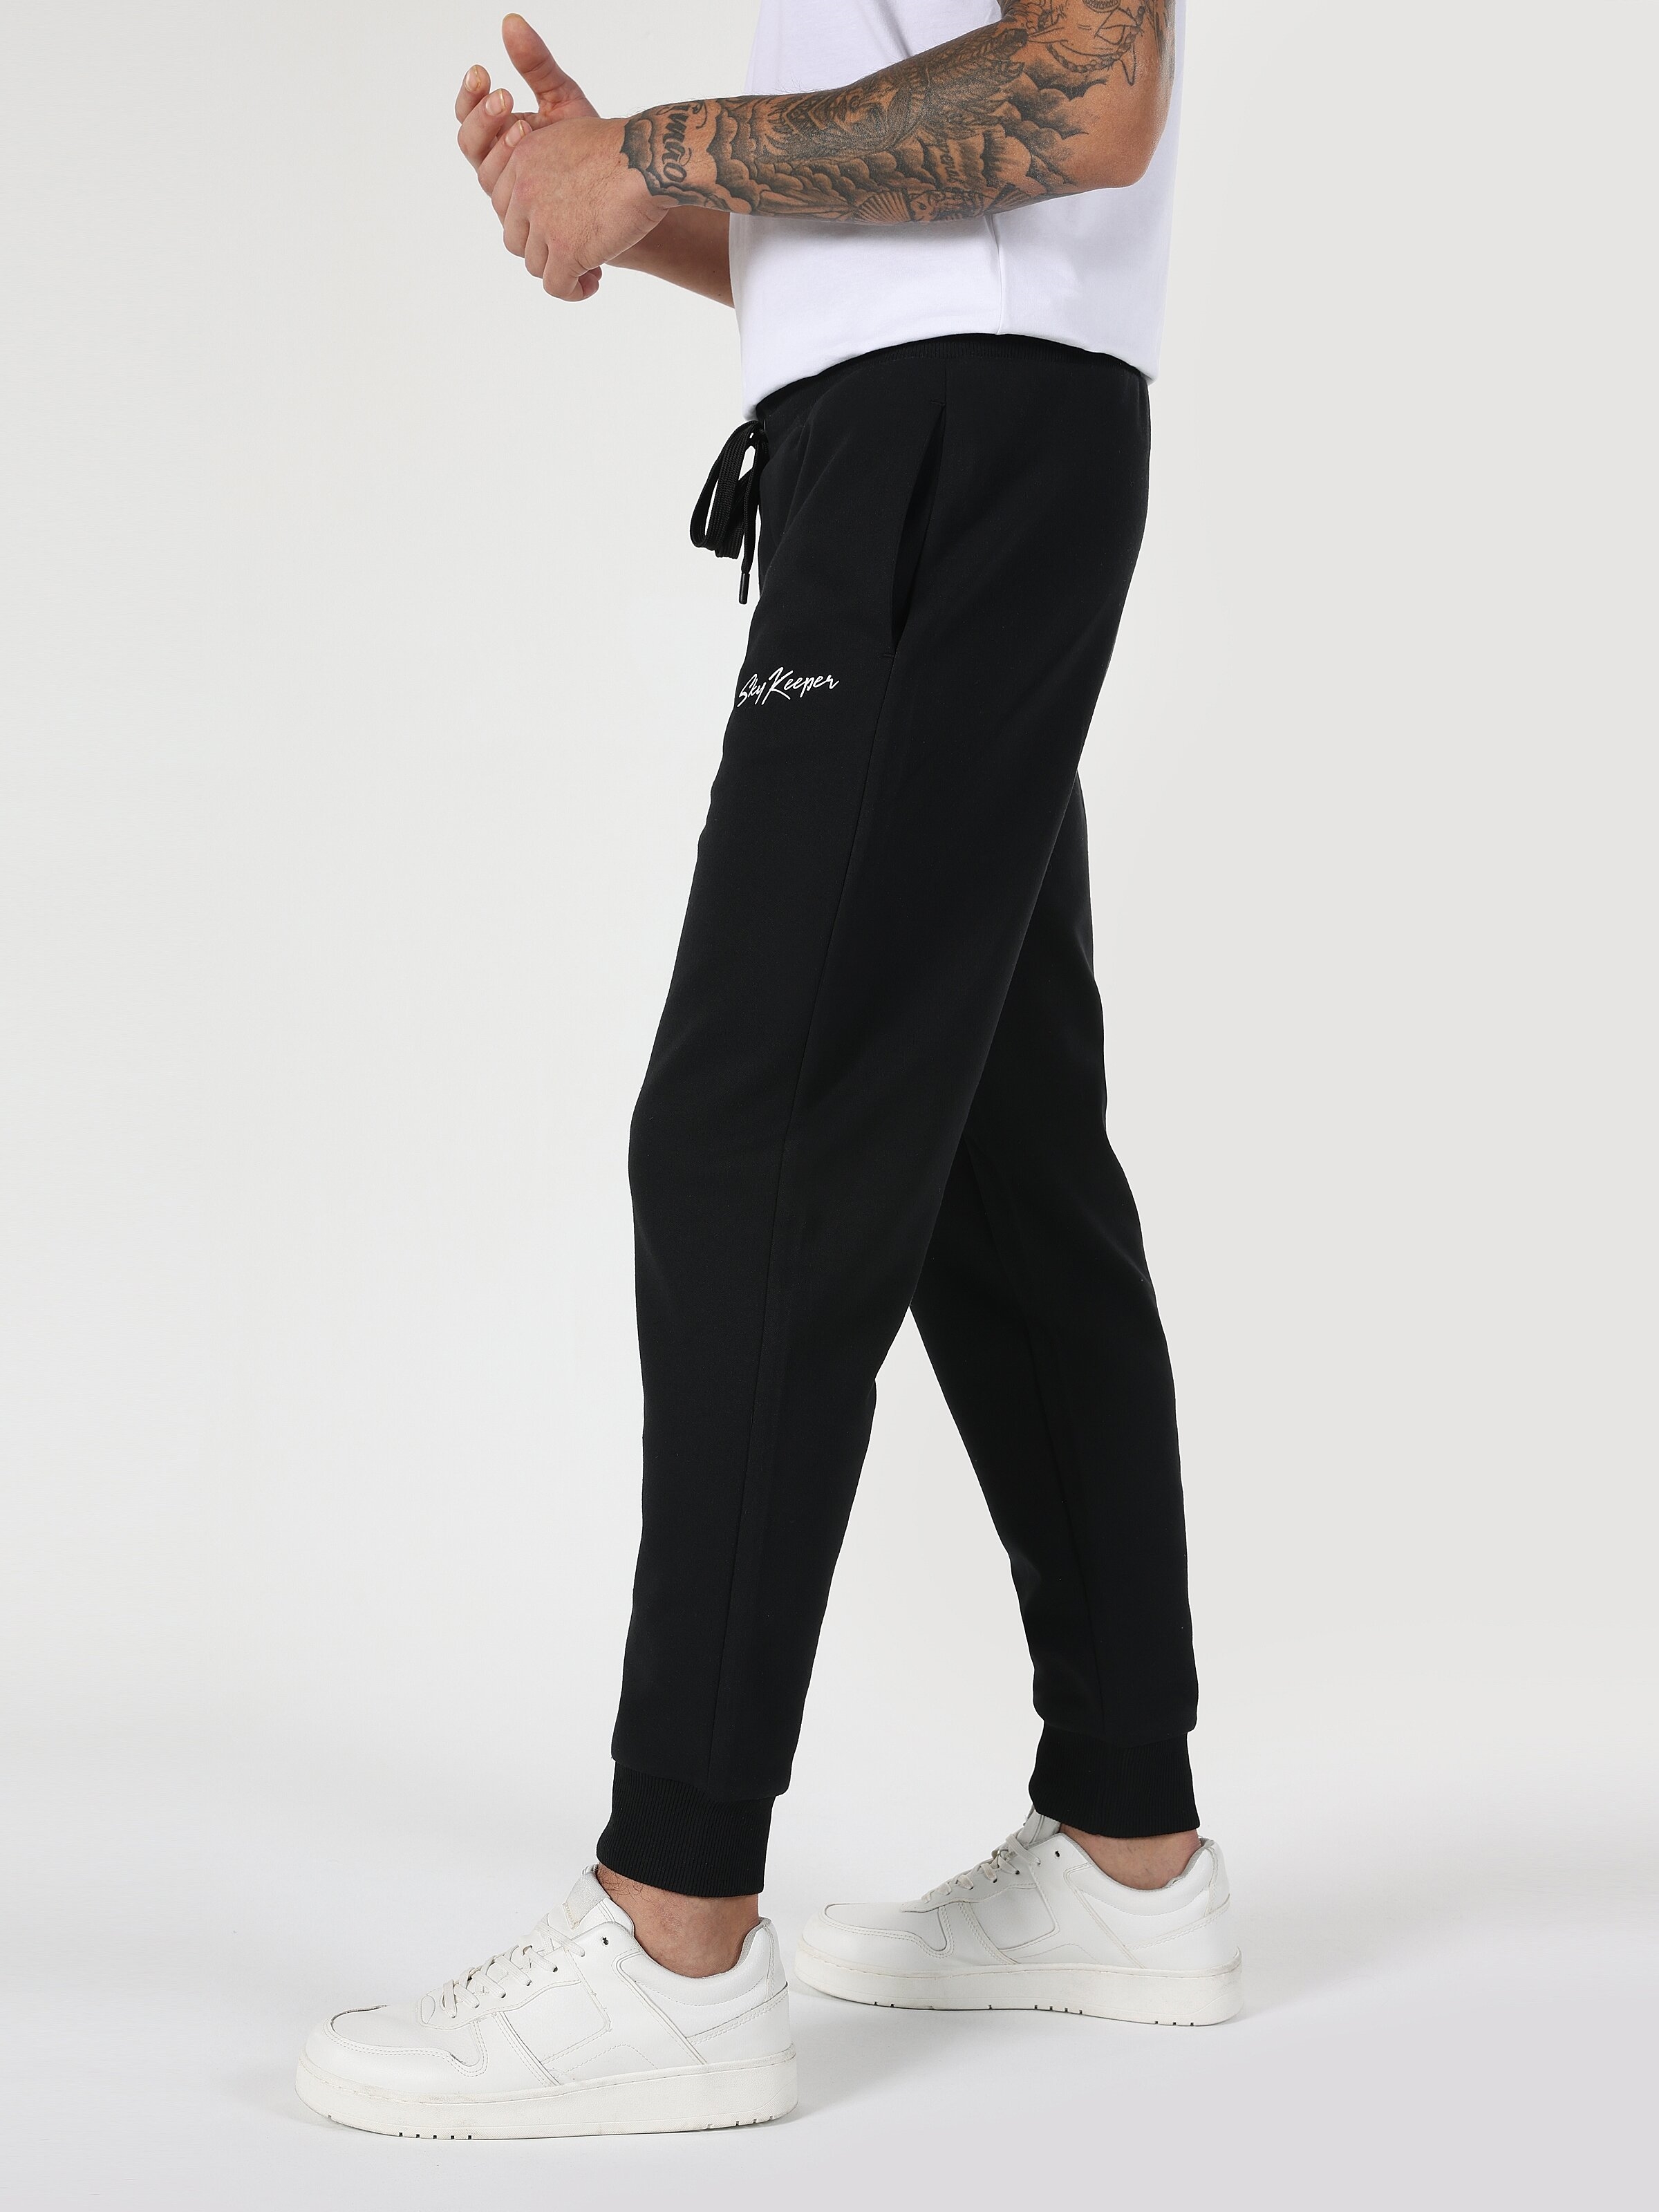 Afficher les détails de Pantalon De Survêtement Noir Jogger Taille Moyenne Coupe Slim Pour Homme